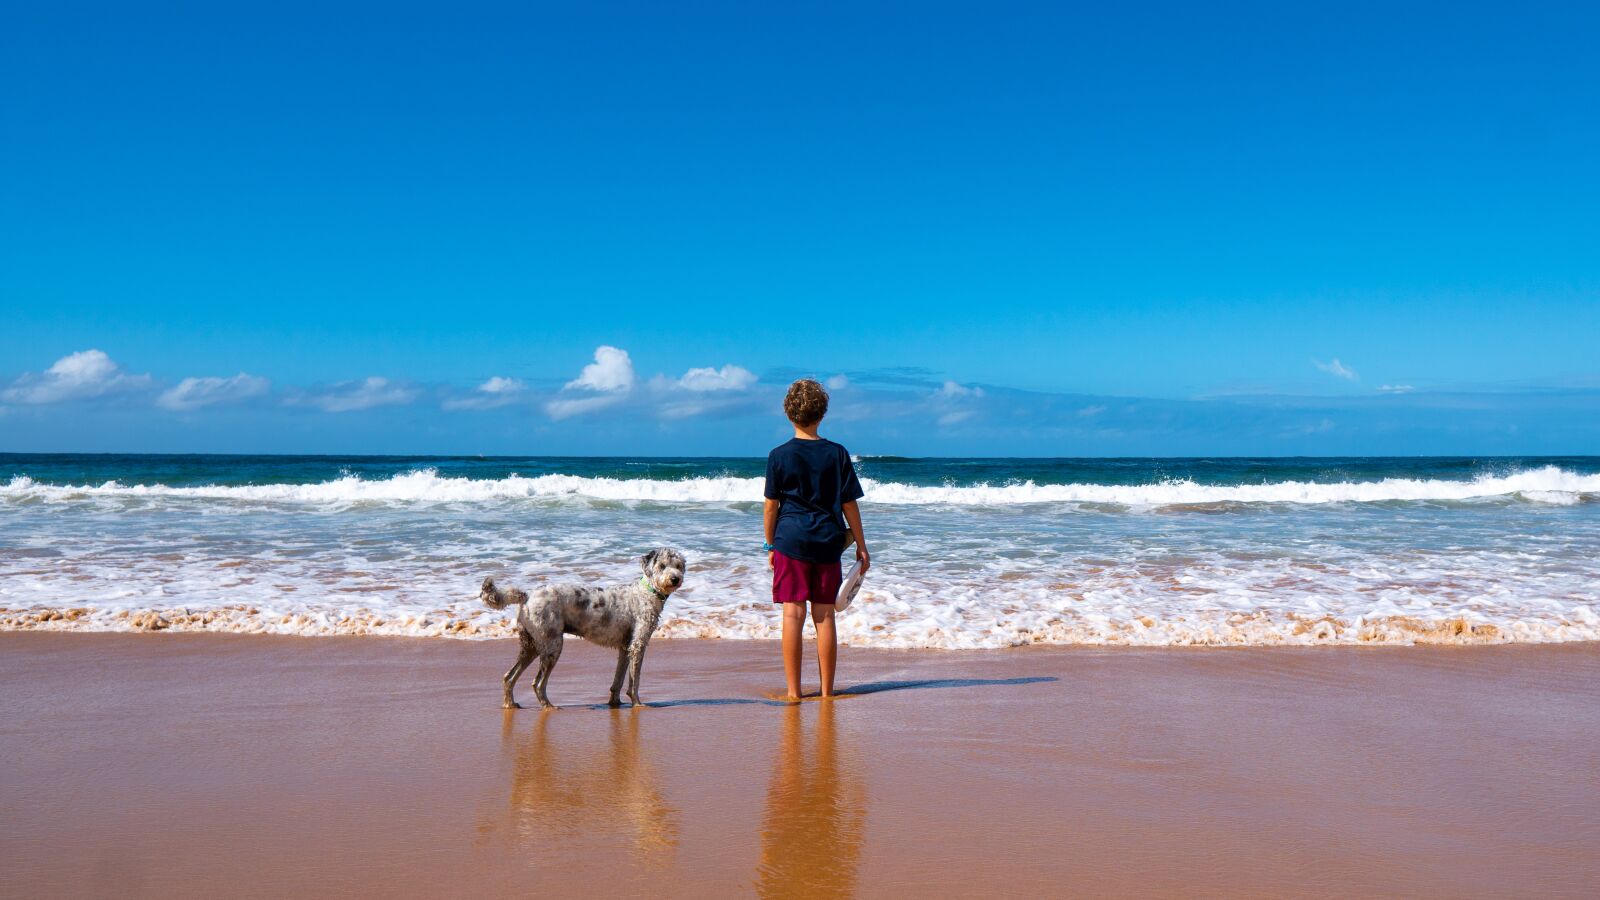 Sony a6300 sample photo. Boy, beach, dog photography